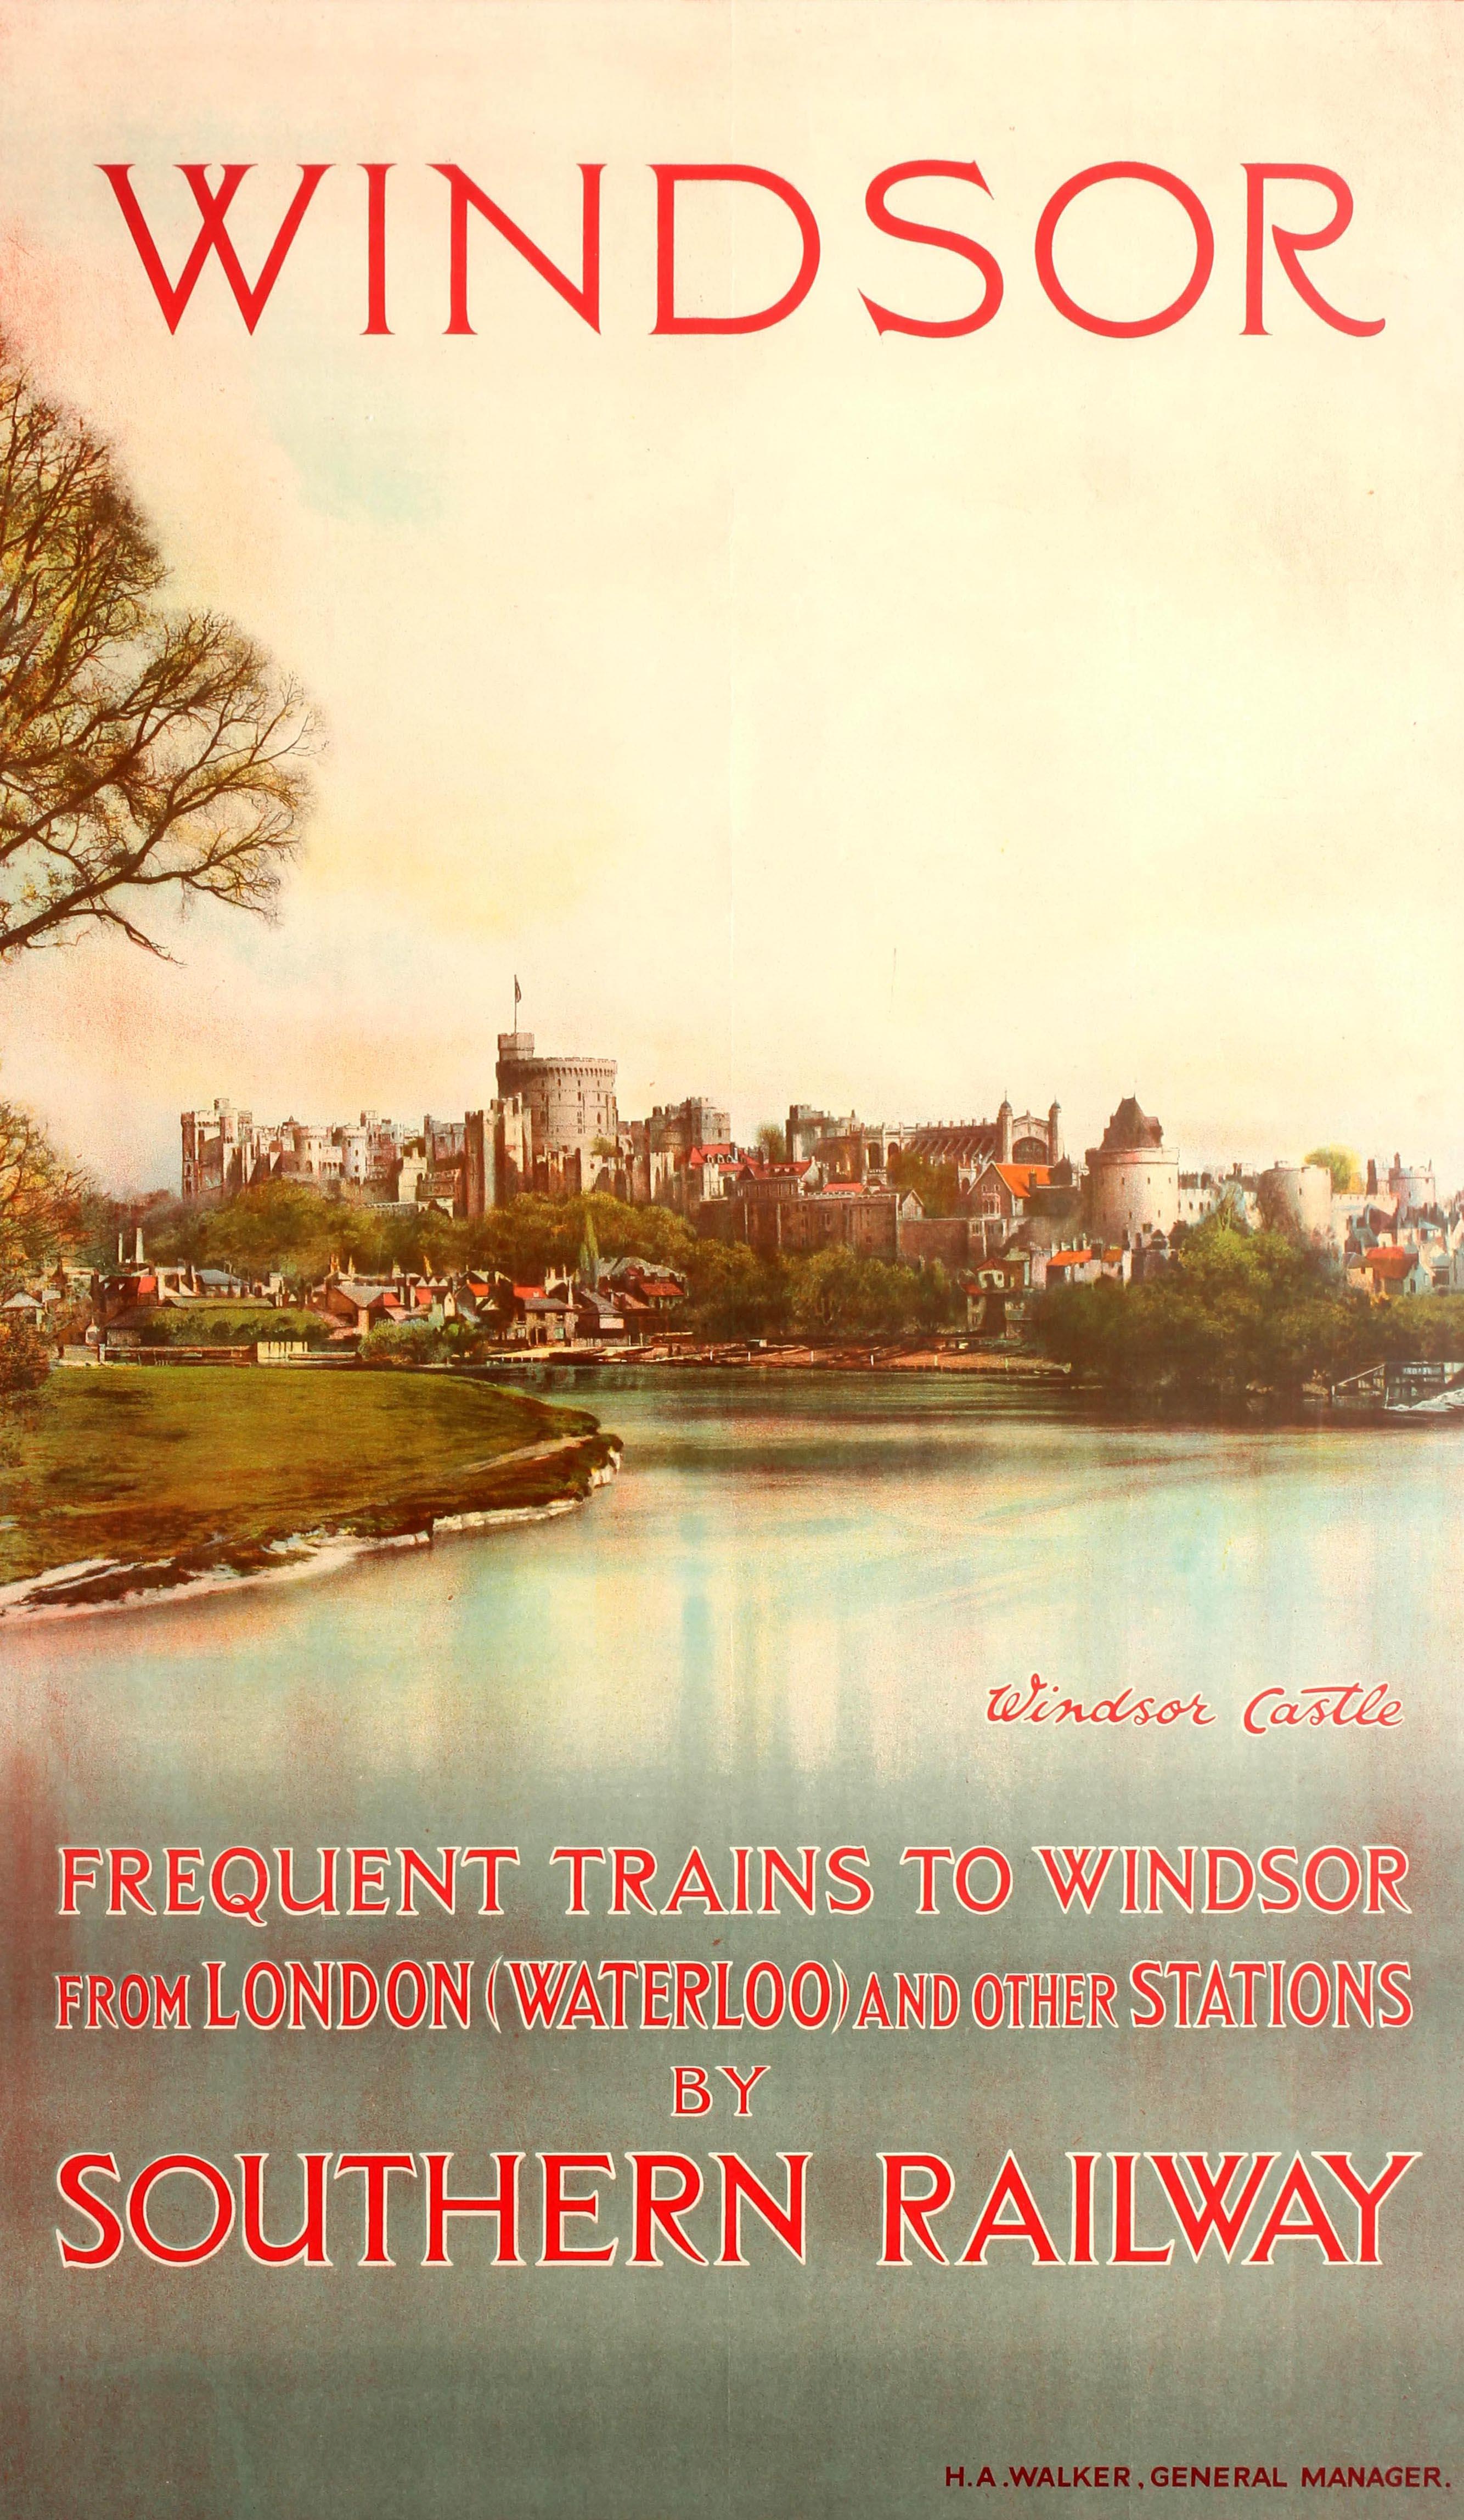 Original-Reise-Werbeplakat für Windsor Castle - Häufige Züge nach Windsor von London (Waterloo) und anderen Bahnhöfen der Southern Railway. Großartiges Bild mit einer Farbfotografie von Schloss Windsor und der historischen Stadt Windsor mit der